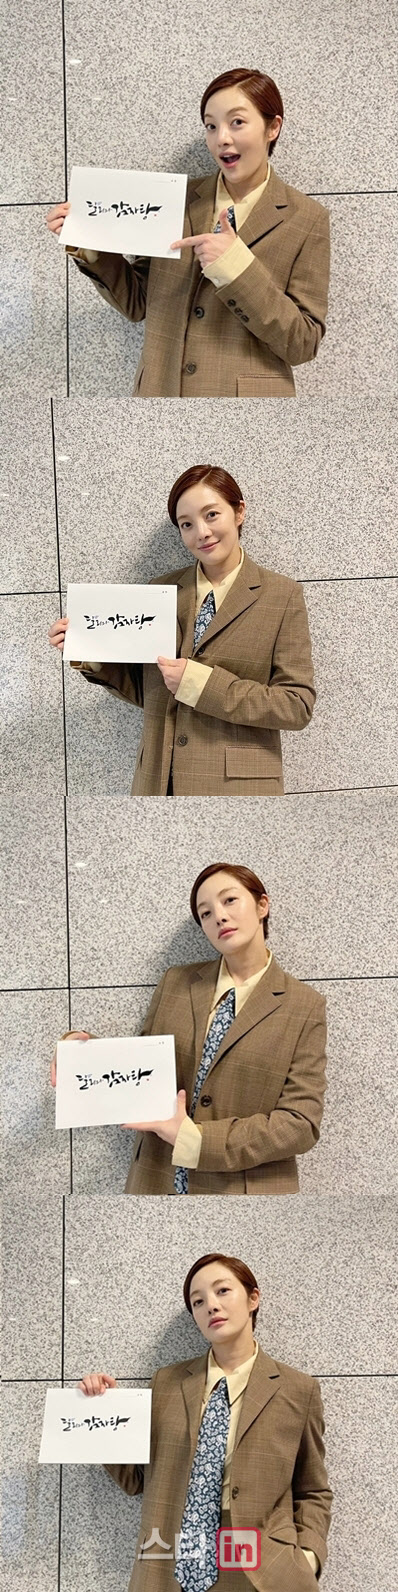 KBS2TV 새수목드라마 ‘달려와 감자탕’에 출연하는 배우 황보라